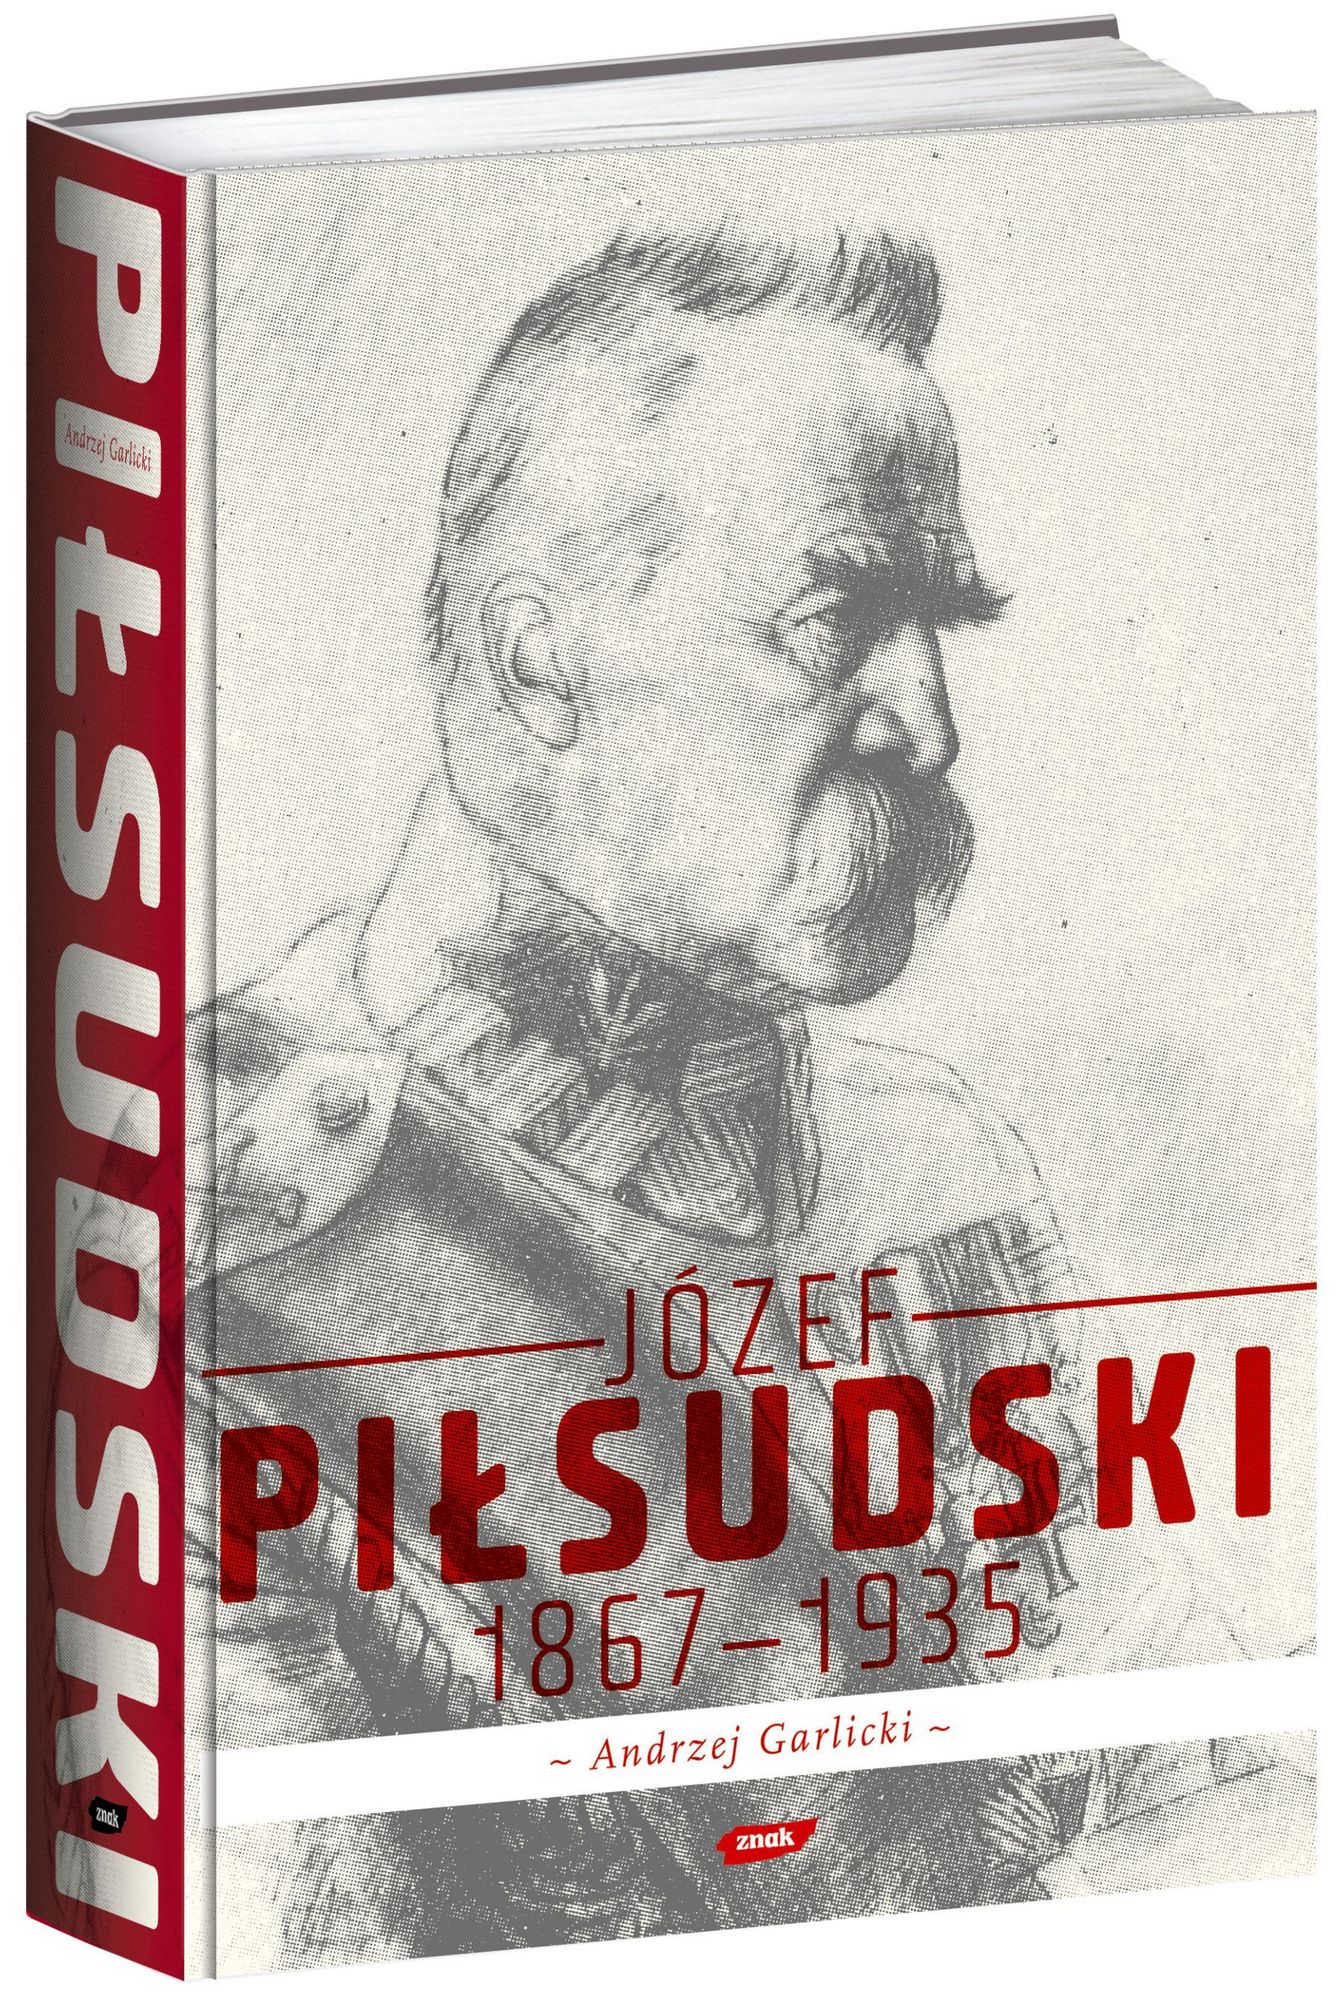 Tekst stanowi fragment książki Andrzeja Garlickiego "Józef Piłsudski 1867-1935".